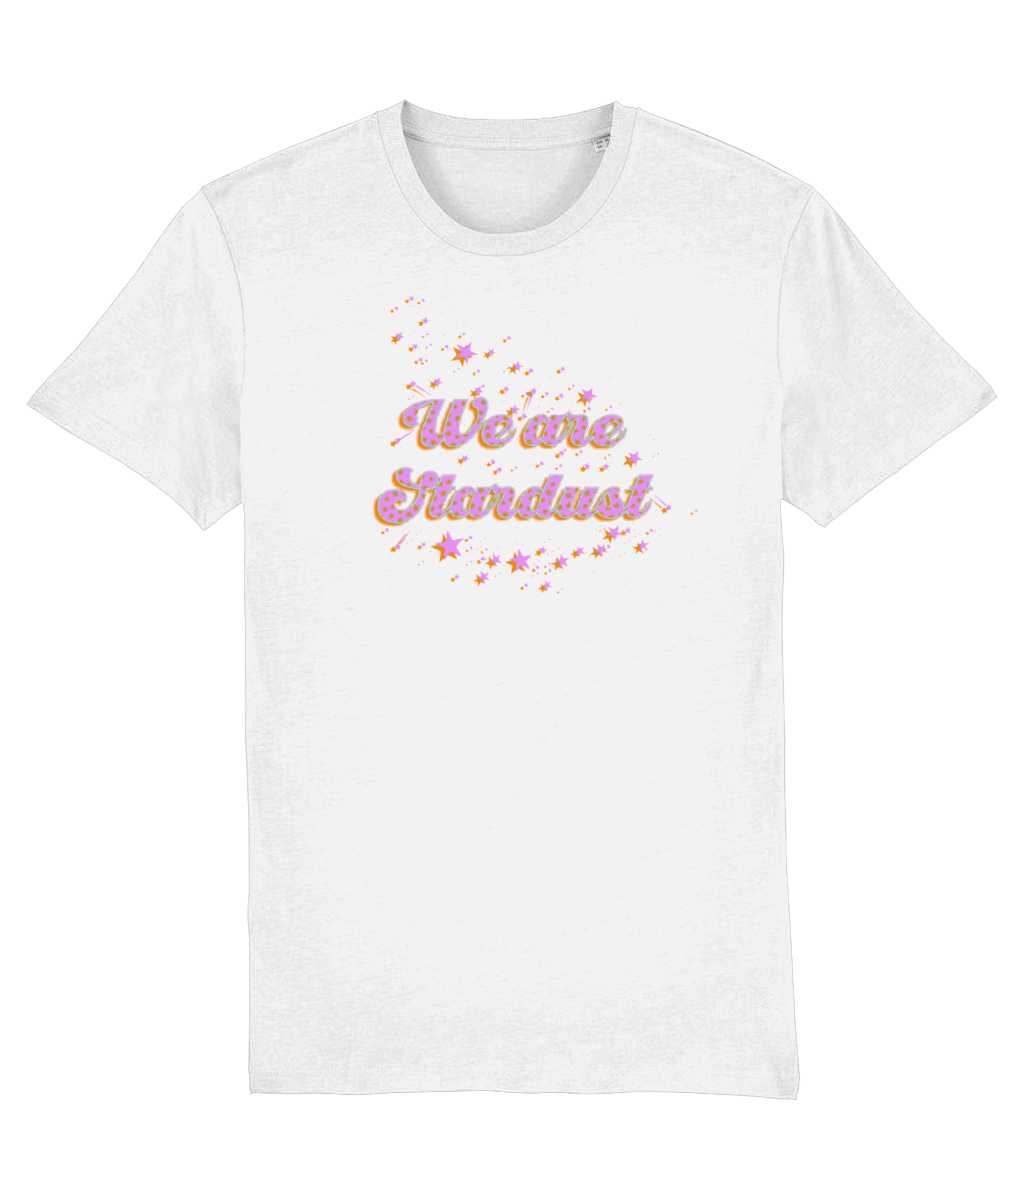 We are Stardust T-shirt in lilac print Cherchez La Femme brand